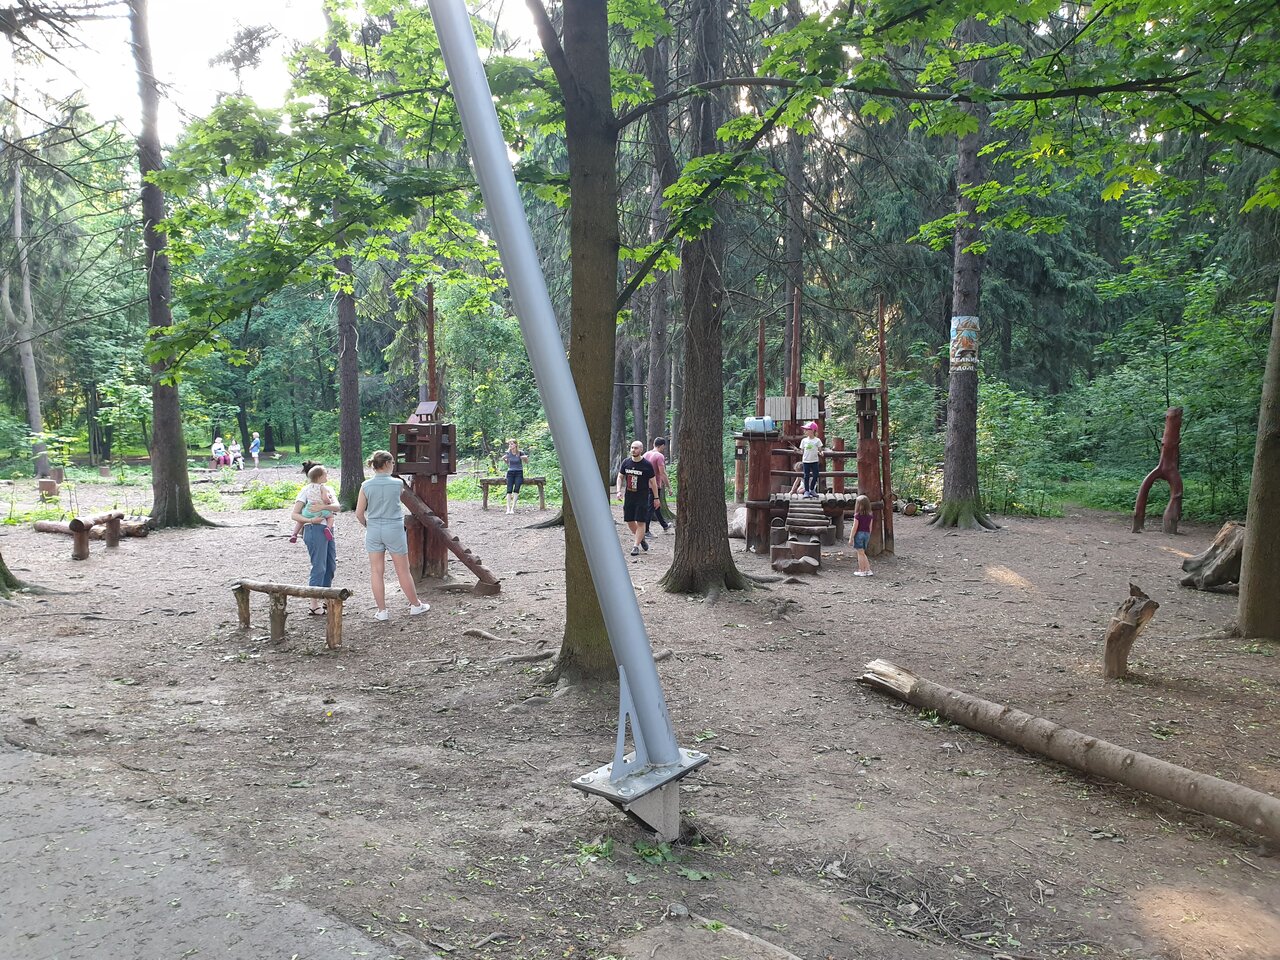 комитетский лес фото